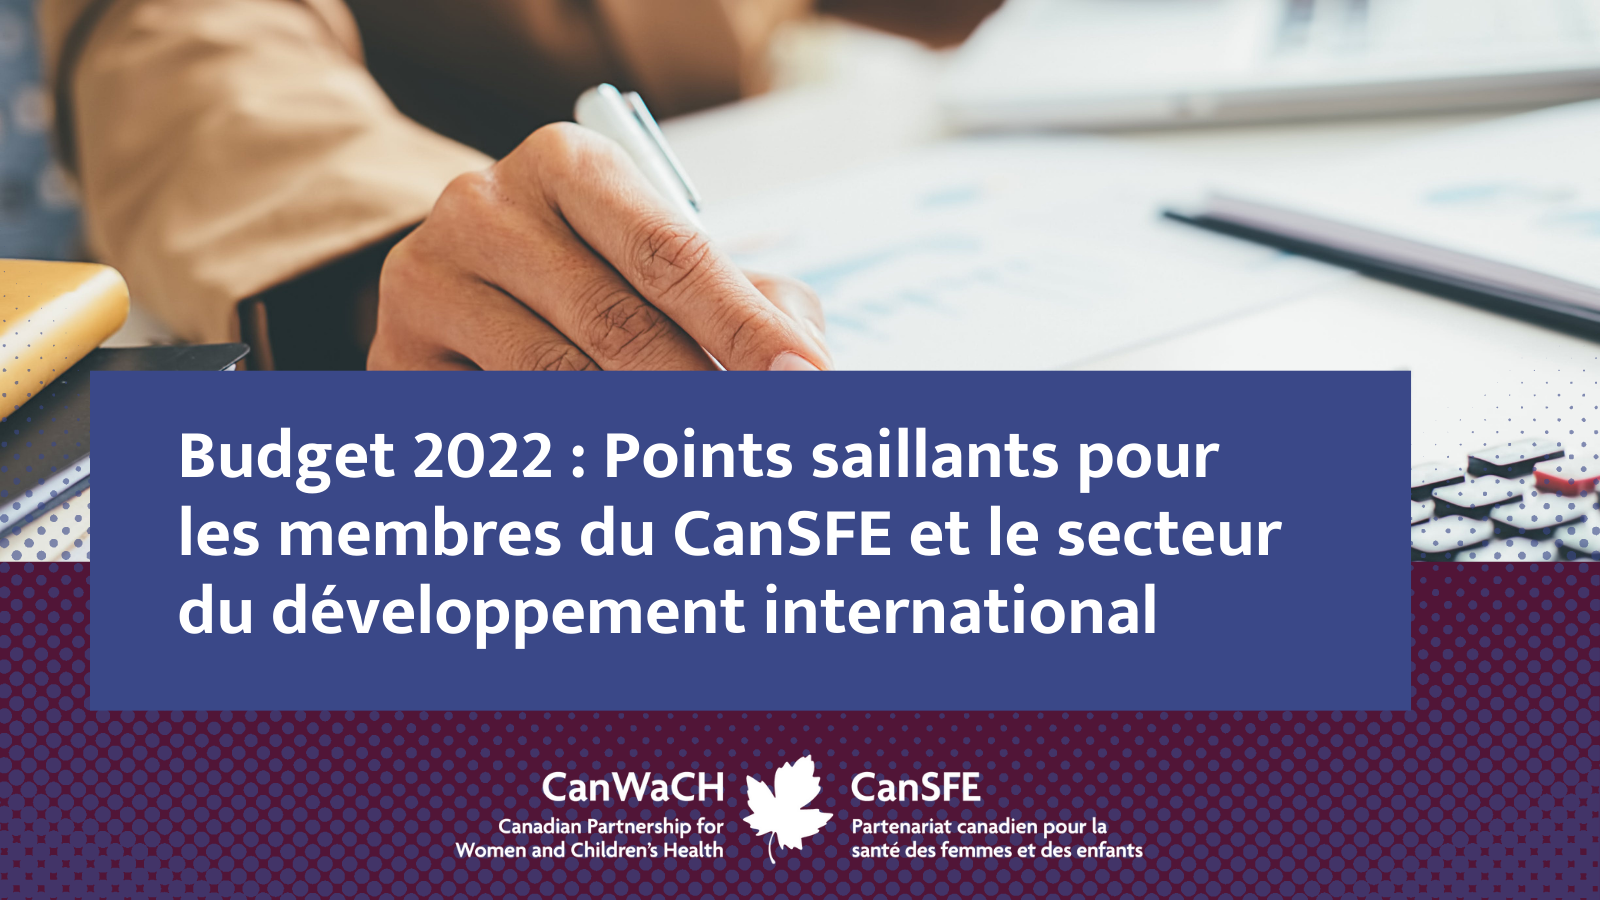 Budget 2022 : Points saillants pour les membres du CanSFE et le secteur du développement international